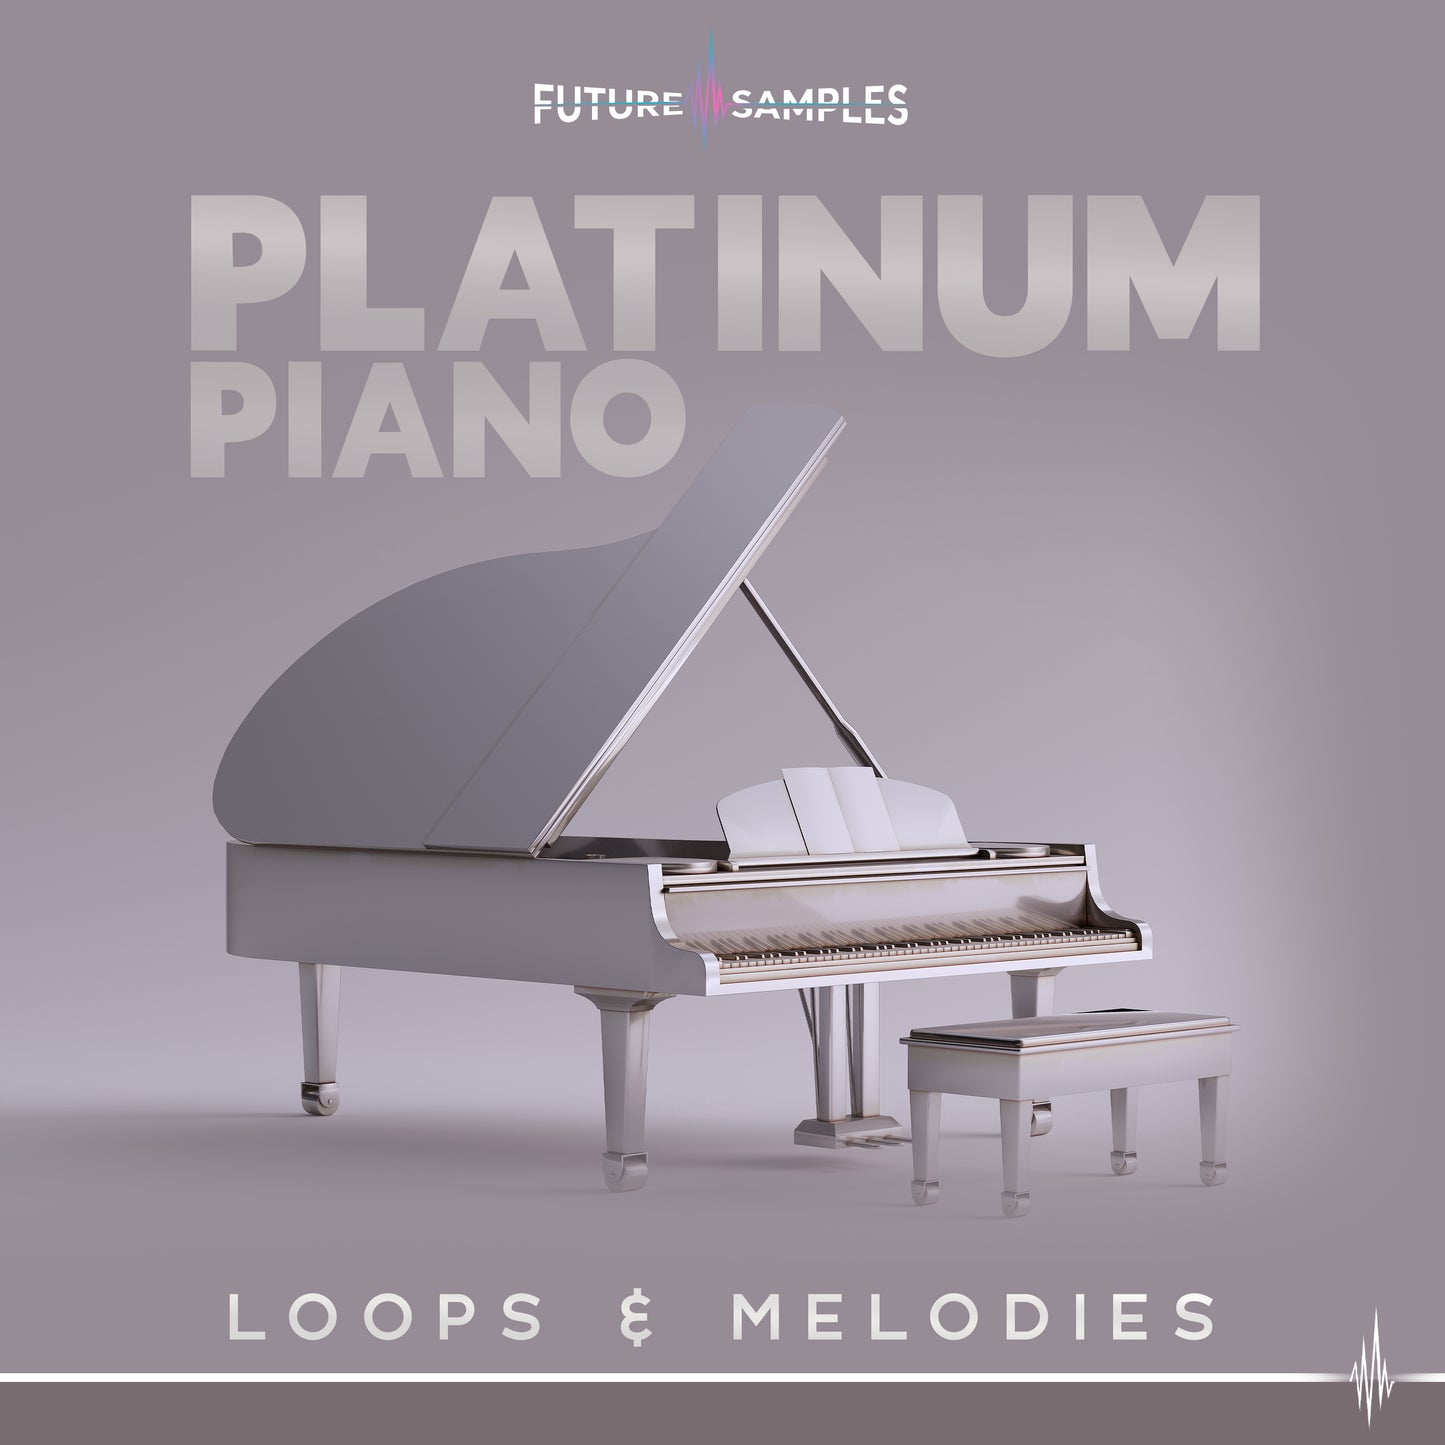 PLATINUM PIANO - Future Samples